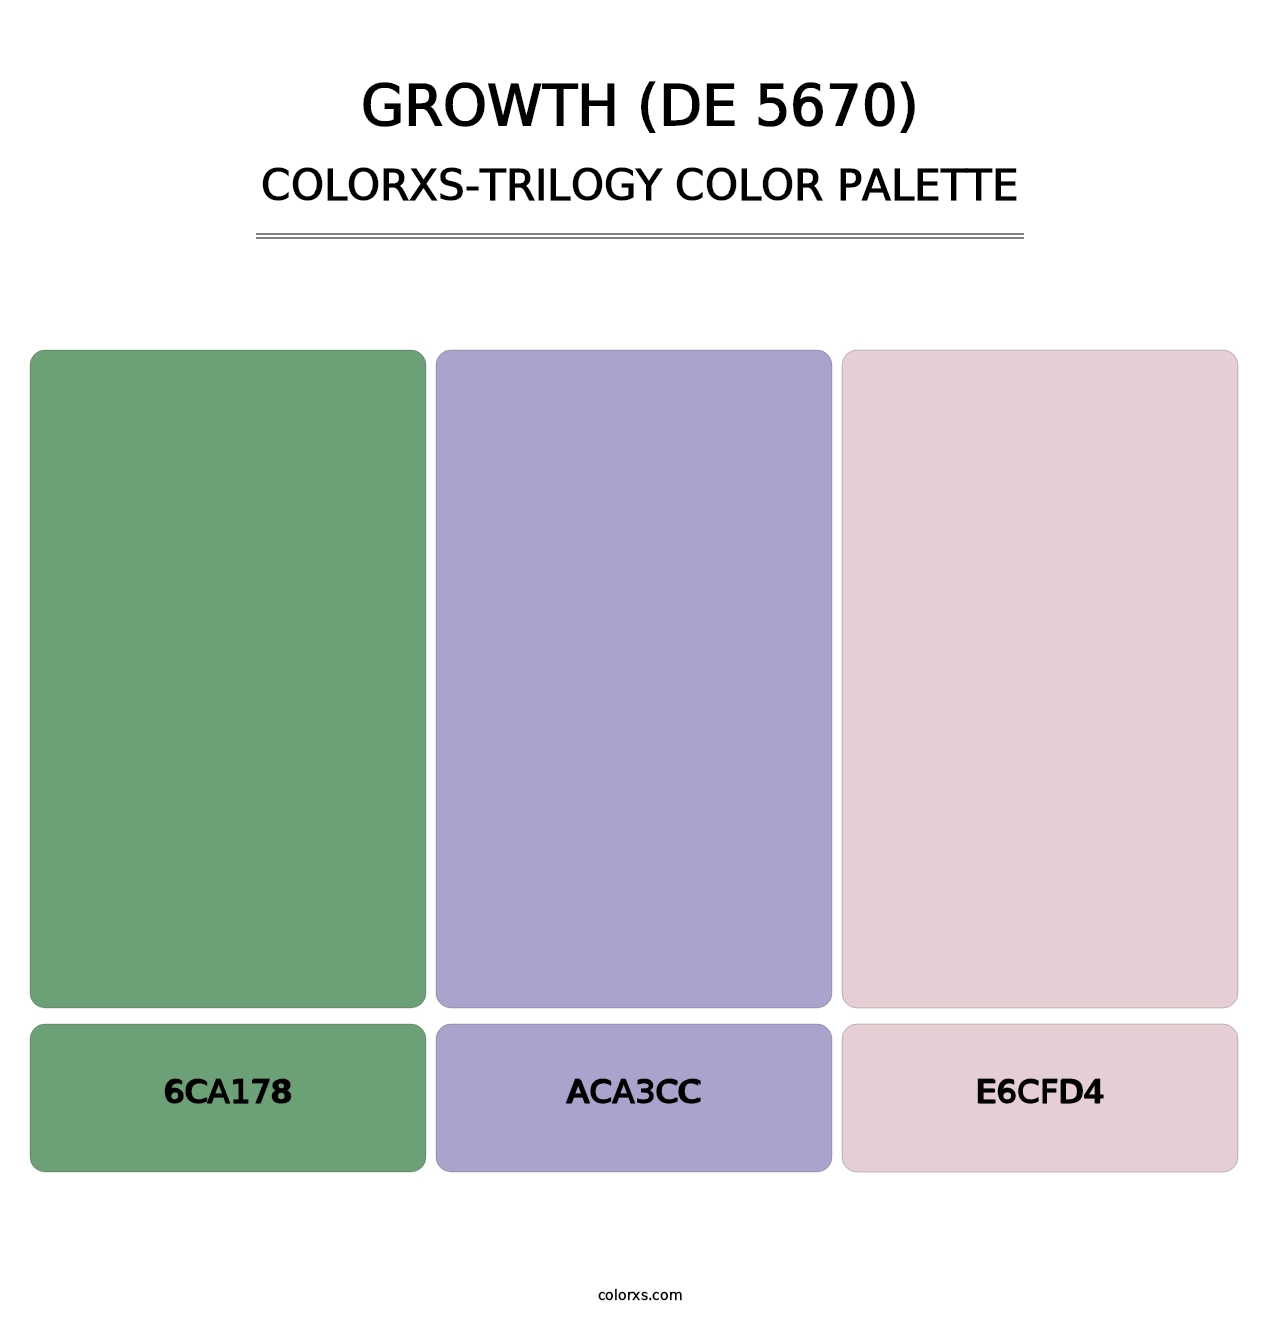 Growth (DE 5670) - Colorxs Trilogy Palette